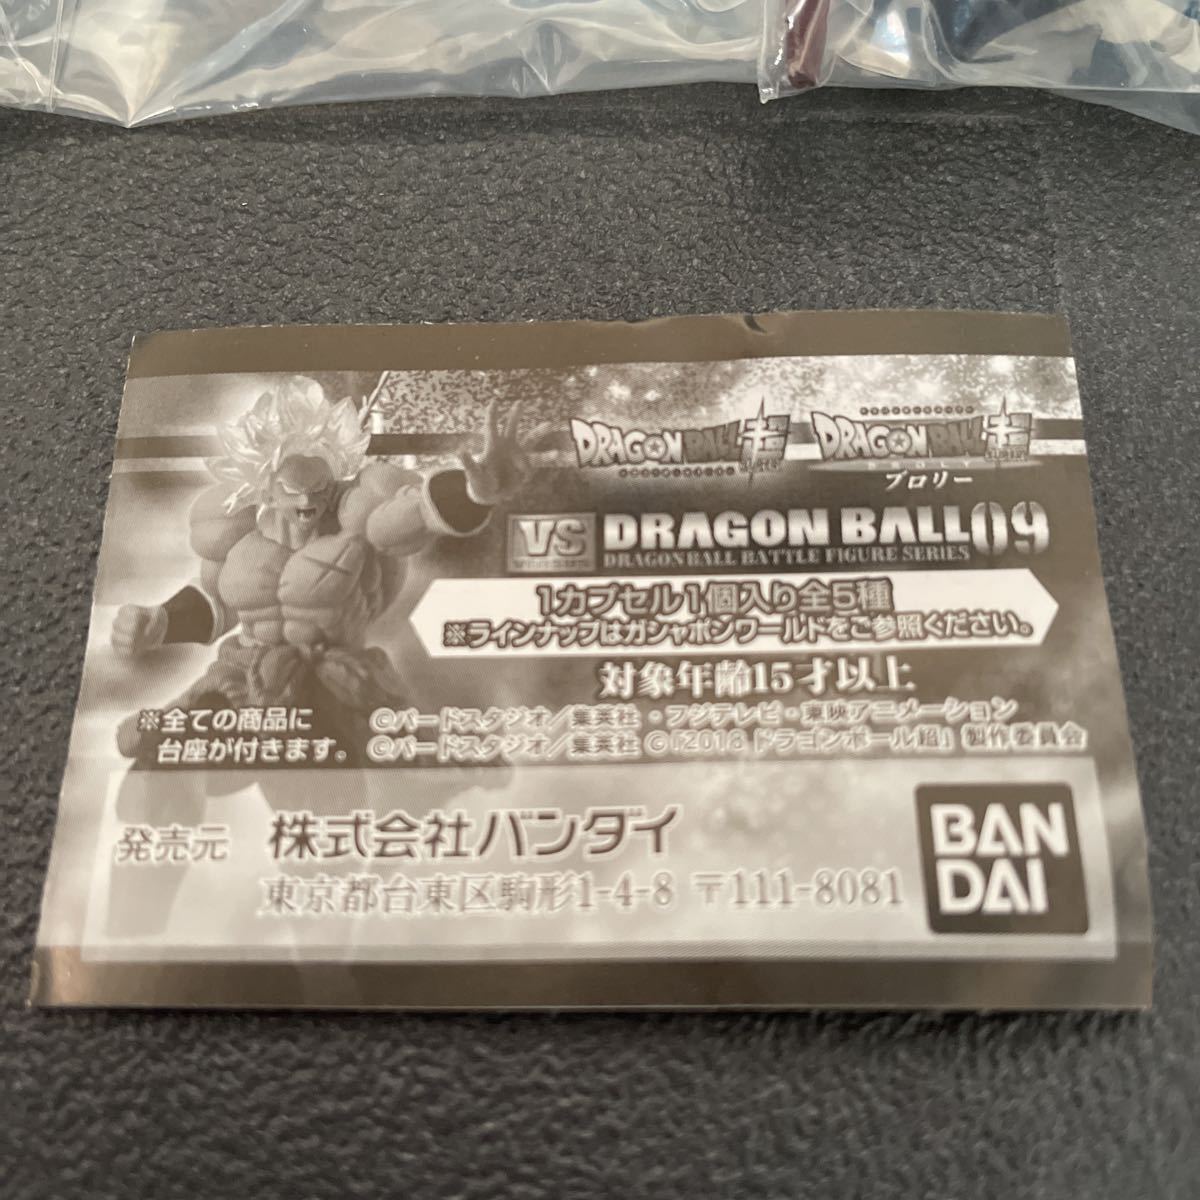 VS DRAGON BALL 09 全5種フルコンプセット 新品未開封品 同梱発送可能 ドラゴンボール超 ブロリー ガシャポン版_画像4